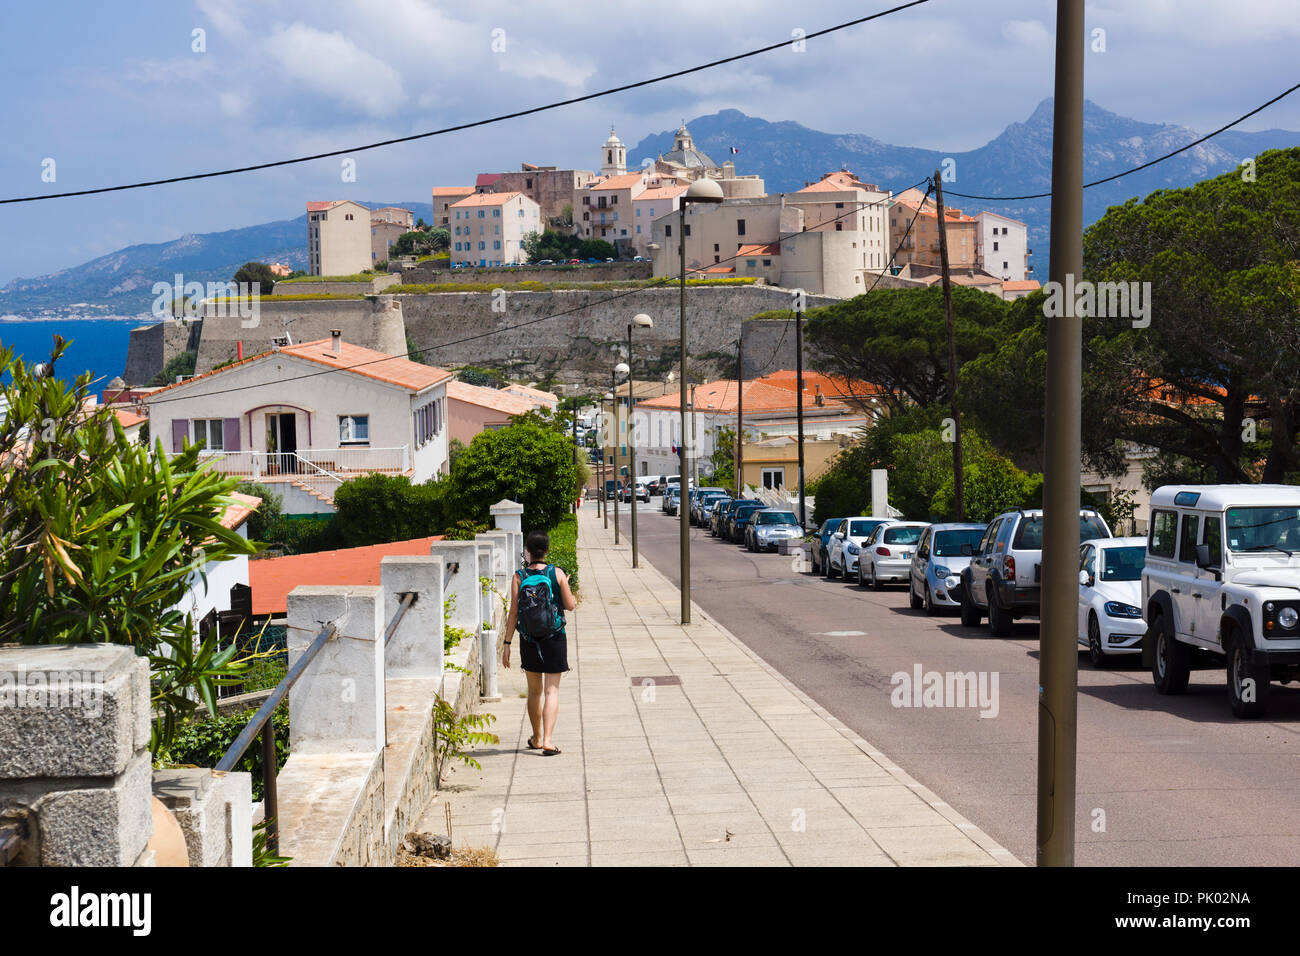 Sac à dos avec touristiques à marcher en direction de la citadelle de Calvi. Calvi, Corse, France Banque D'Images